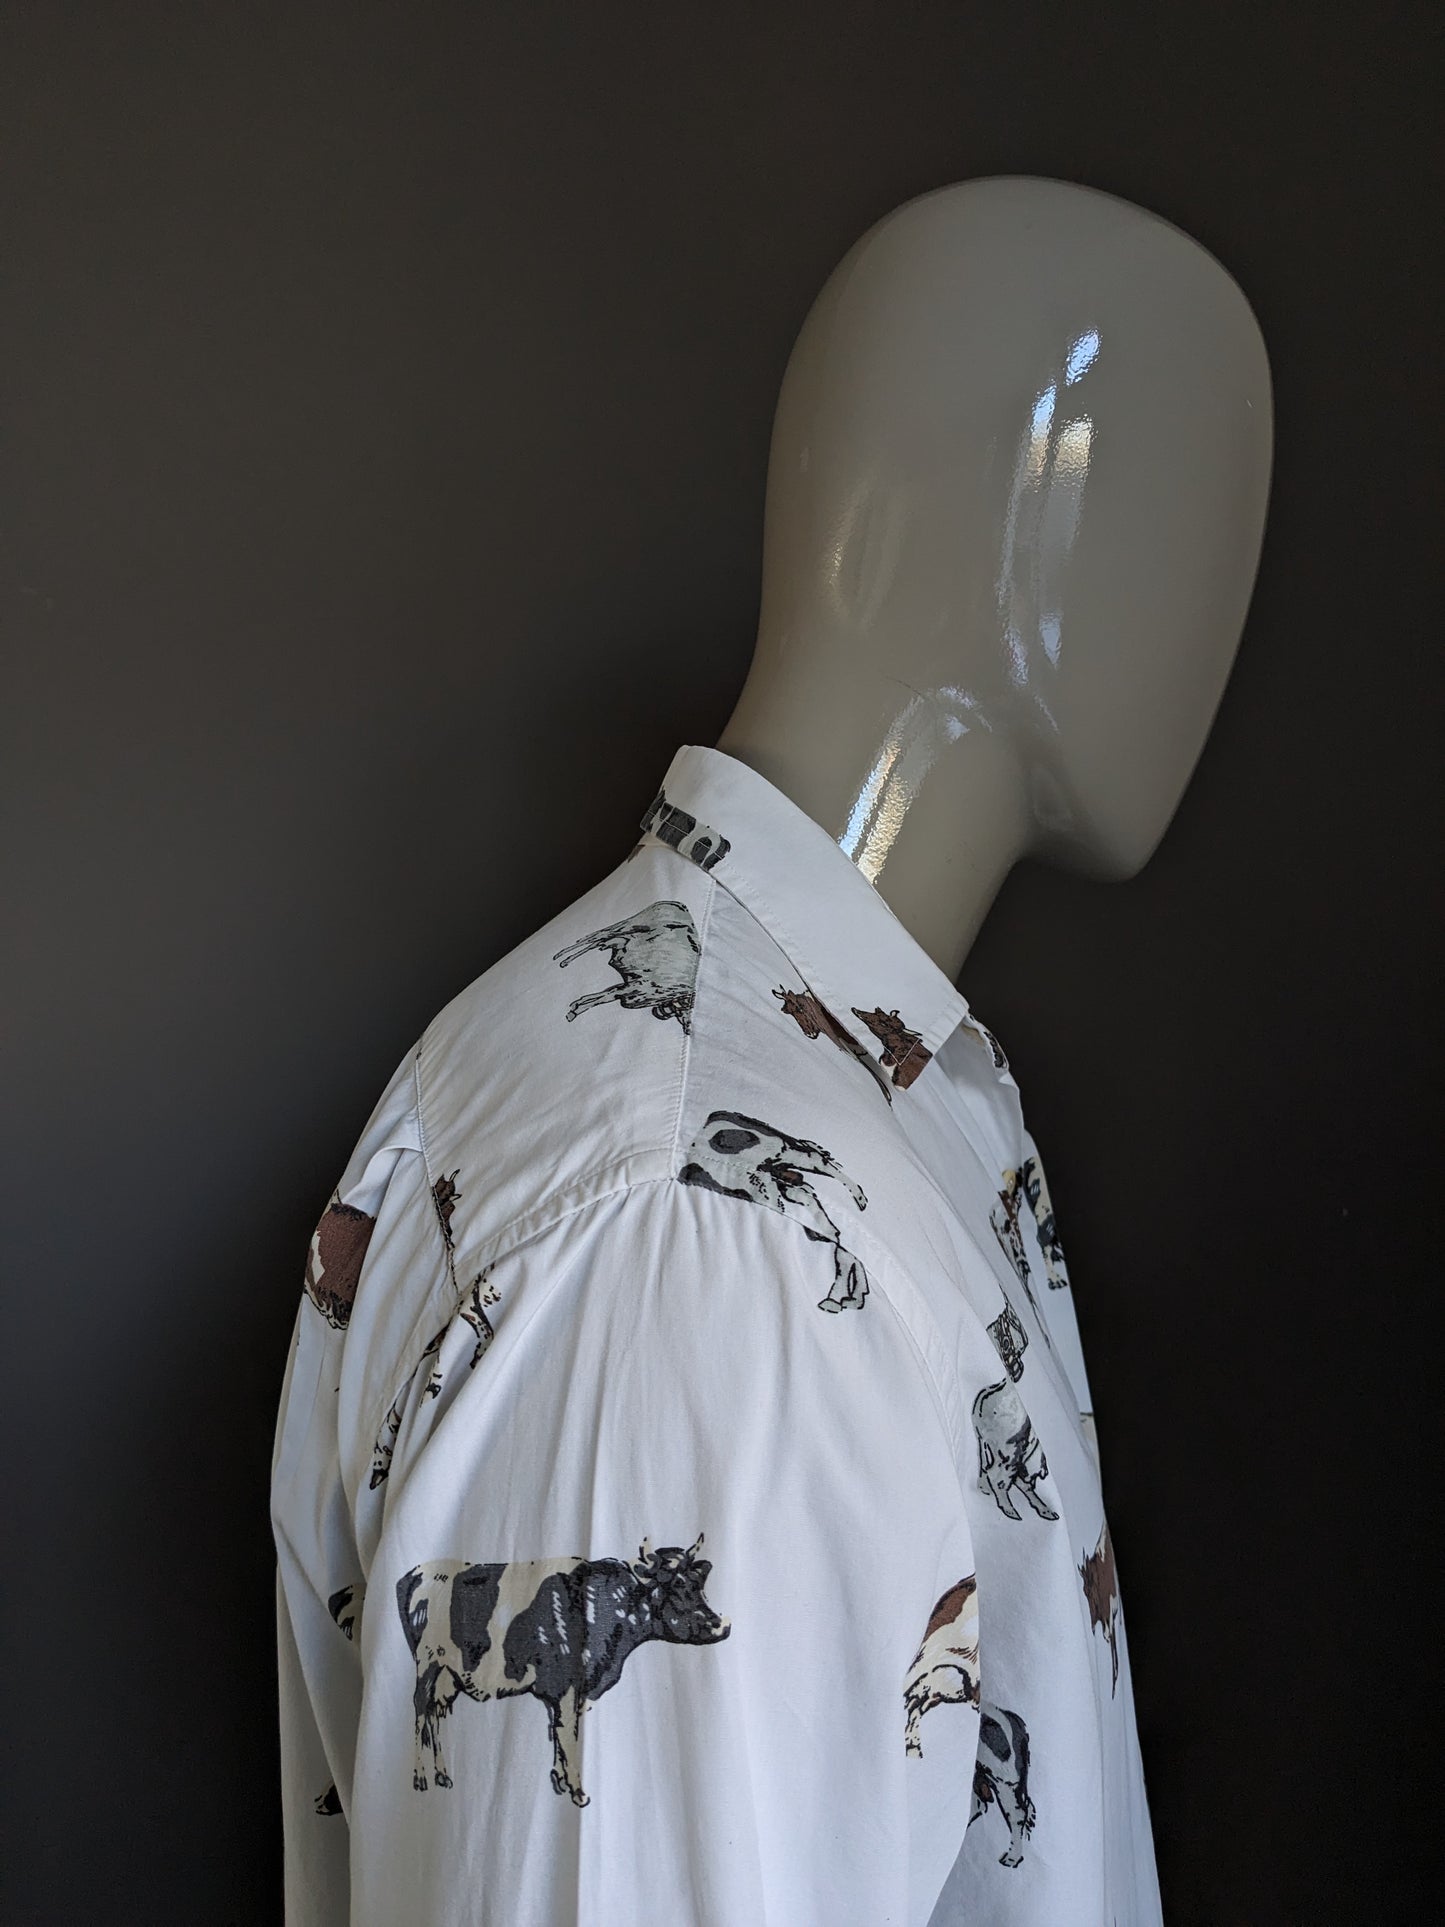 Chemise Vintage Nara Camice. Blanc avec des vaches grises brunes imprimées. Taille L.